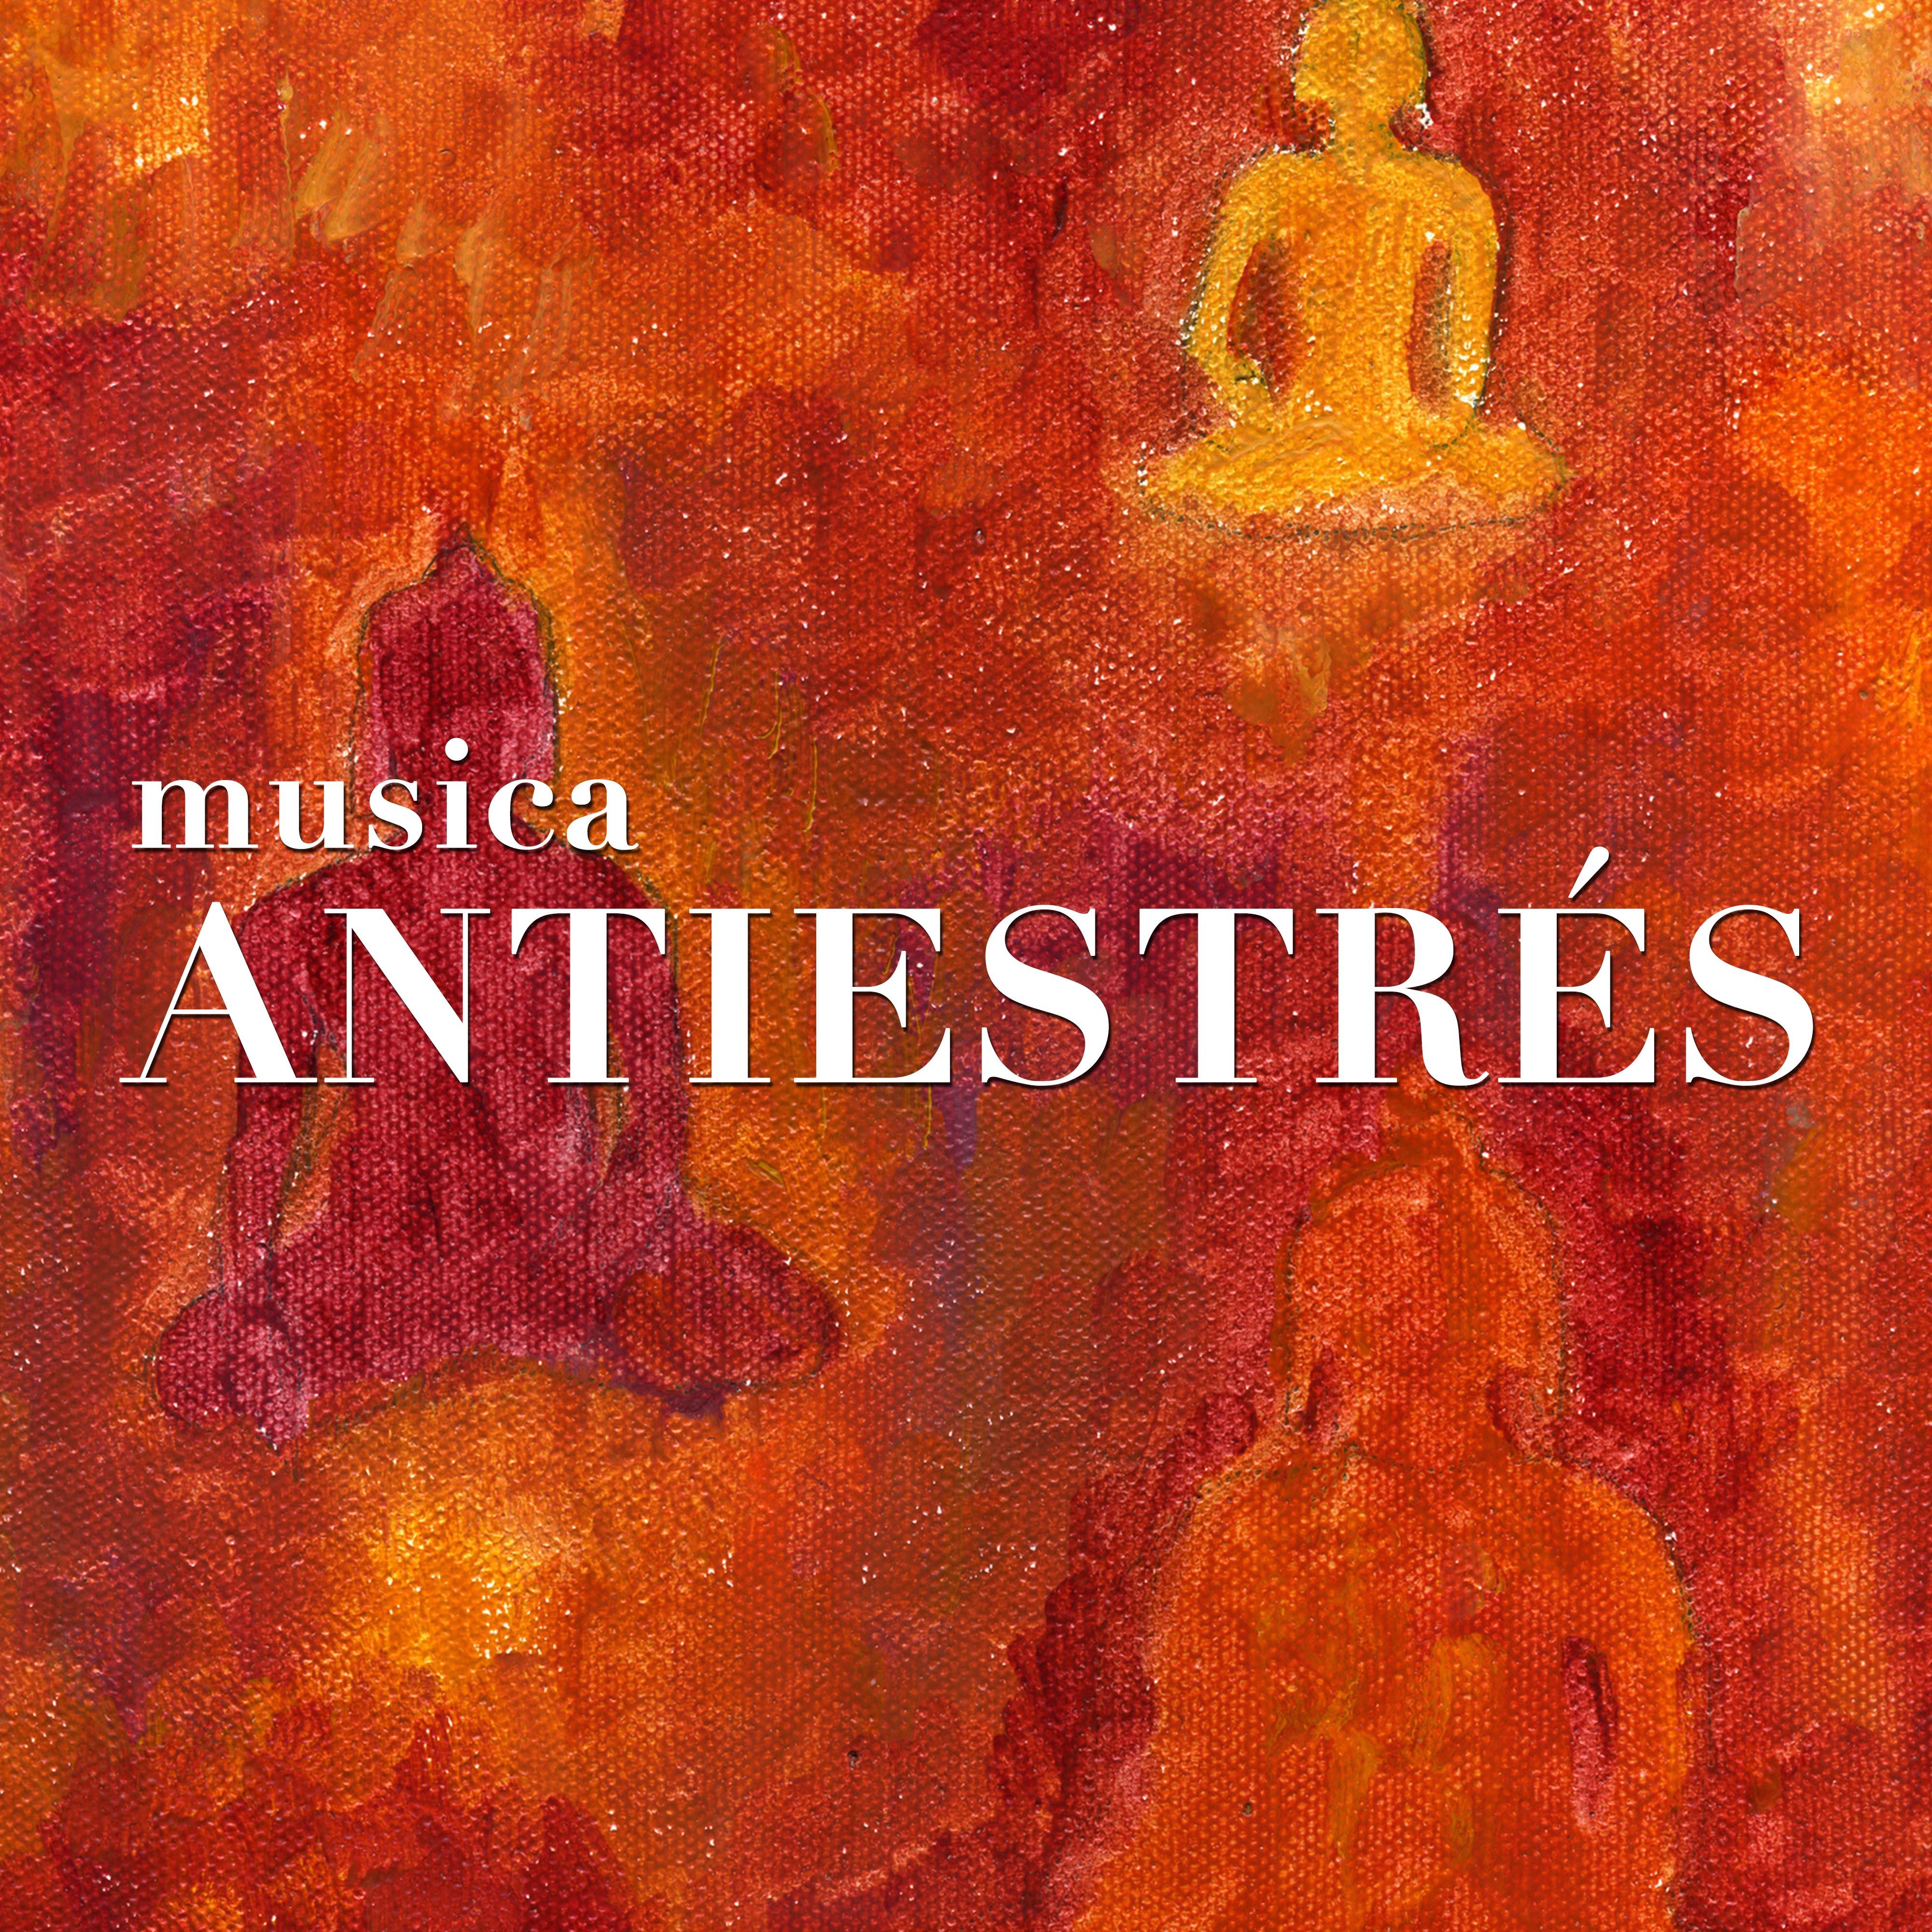 Antiestrés: Música Instrumental de Meditación con Piano, Lluvia, Flauta, Viento y las Olas del Mar